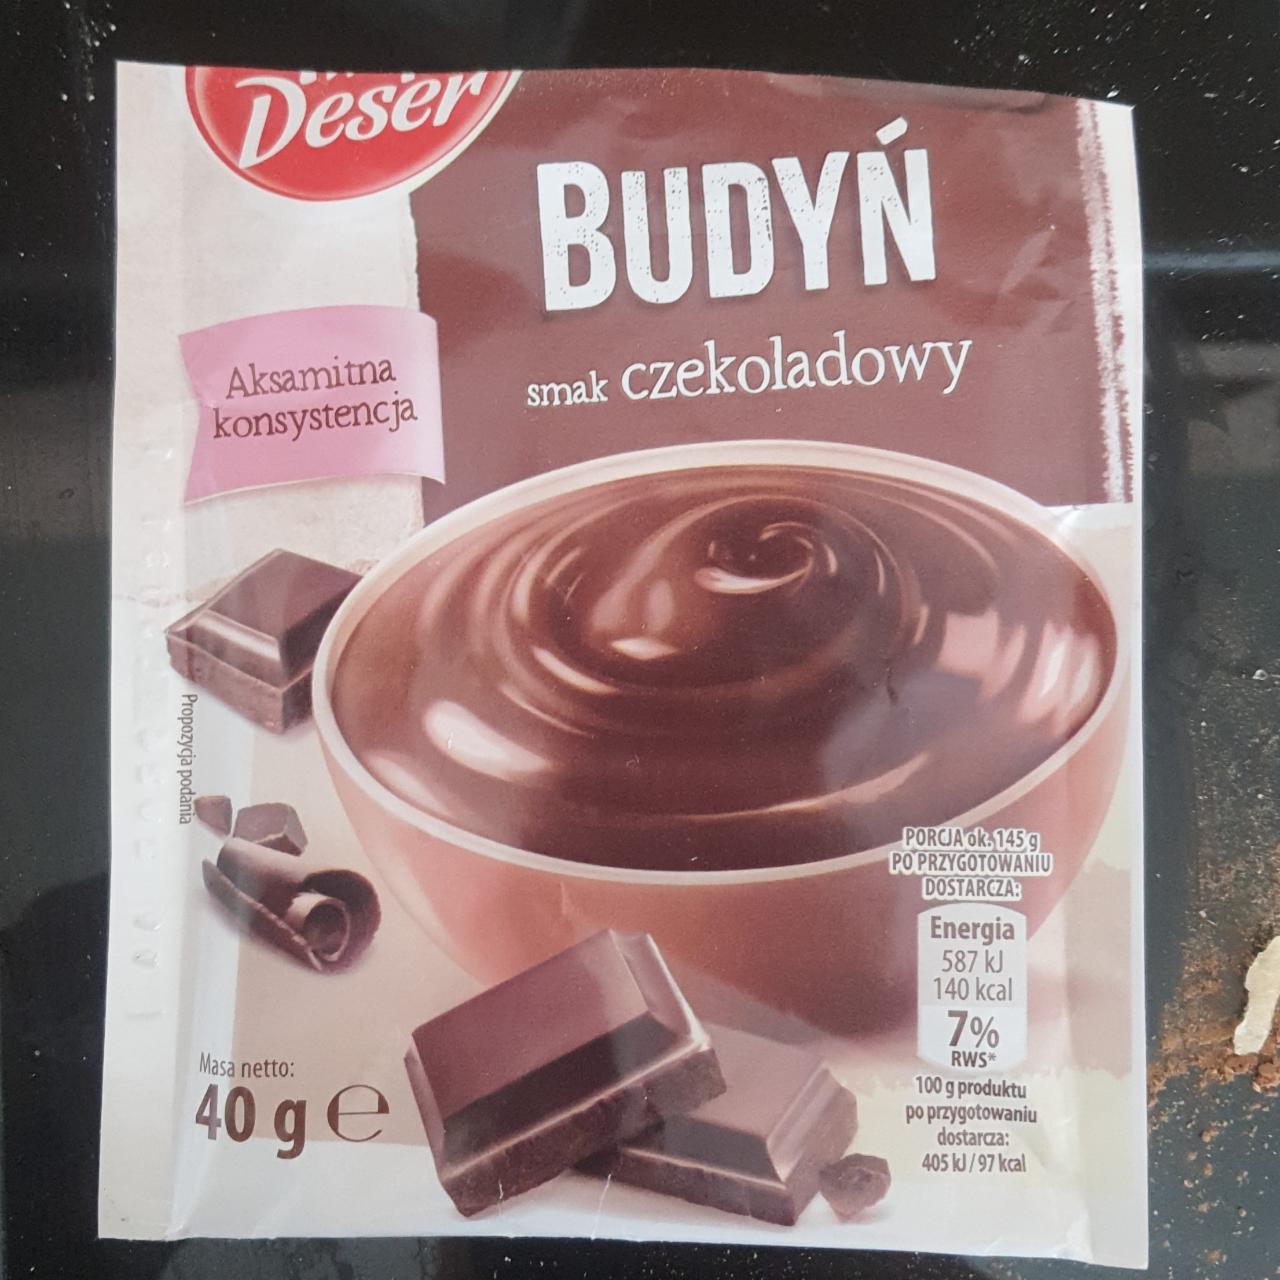 Fotografie - Budyń smak czekoladowy Twój Deser